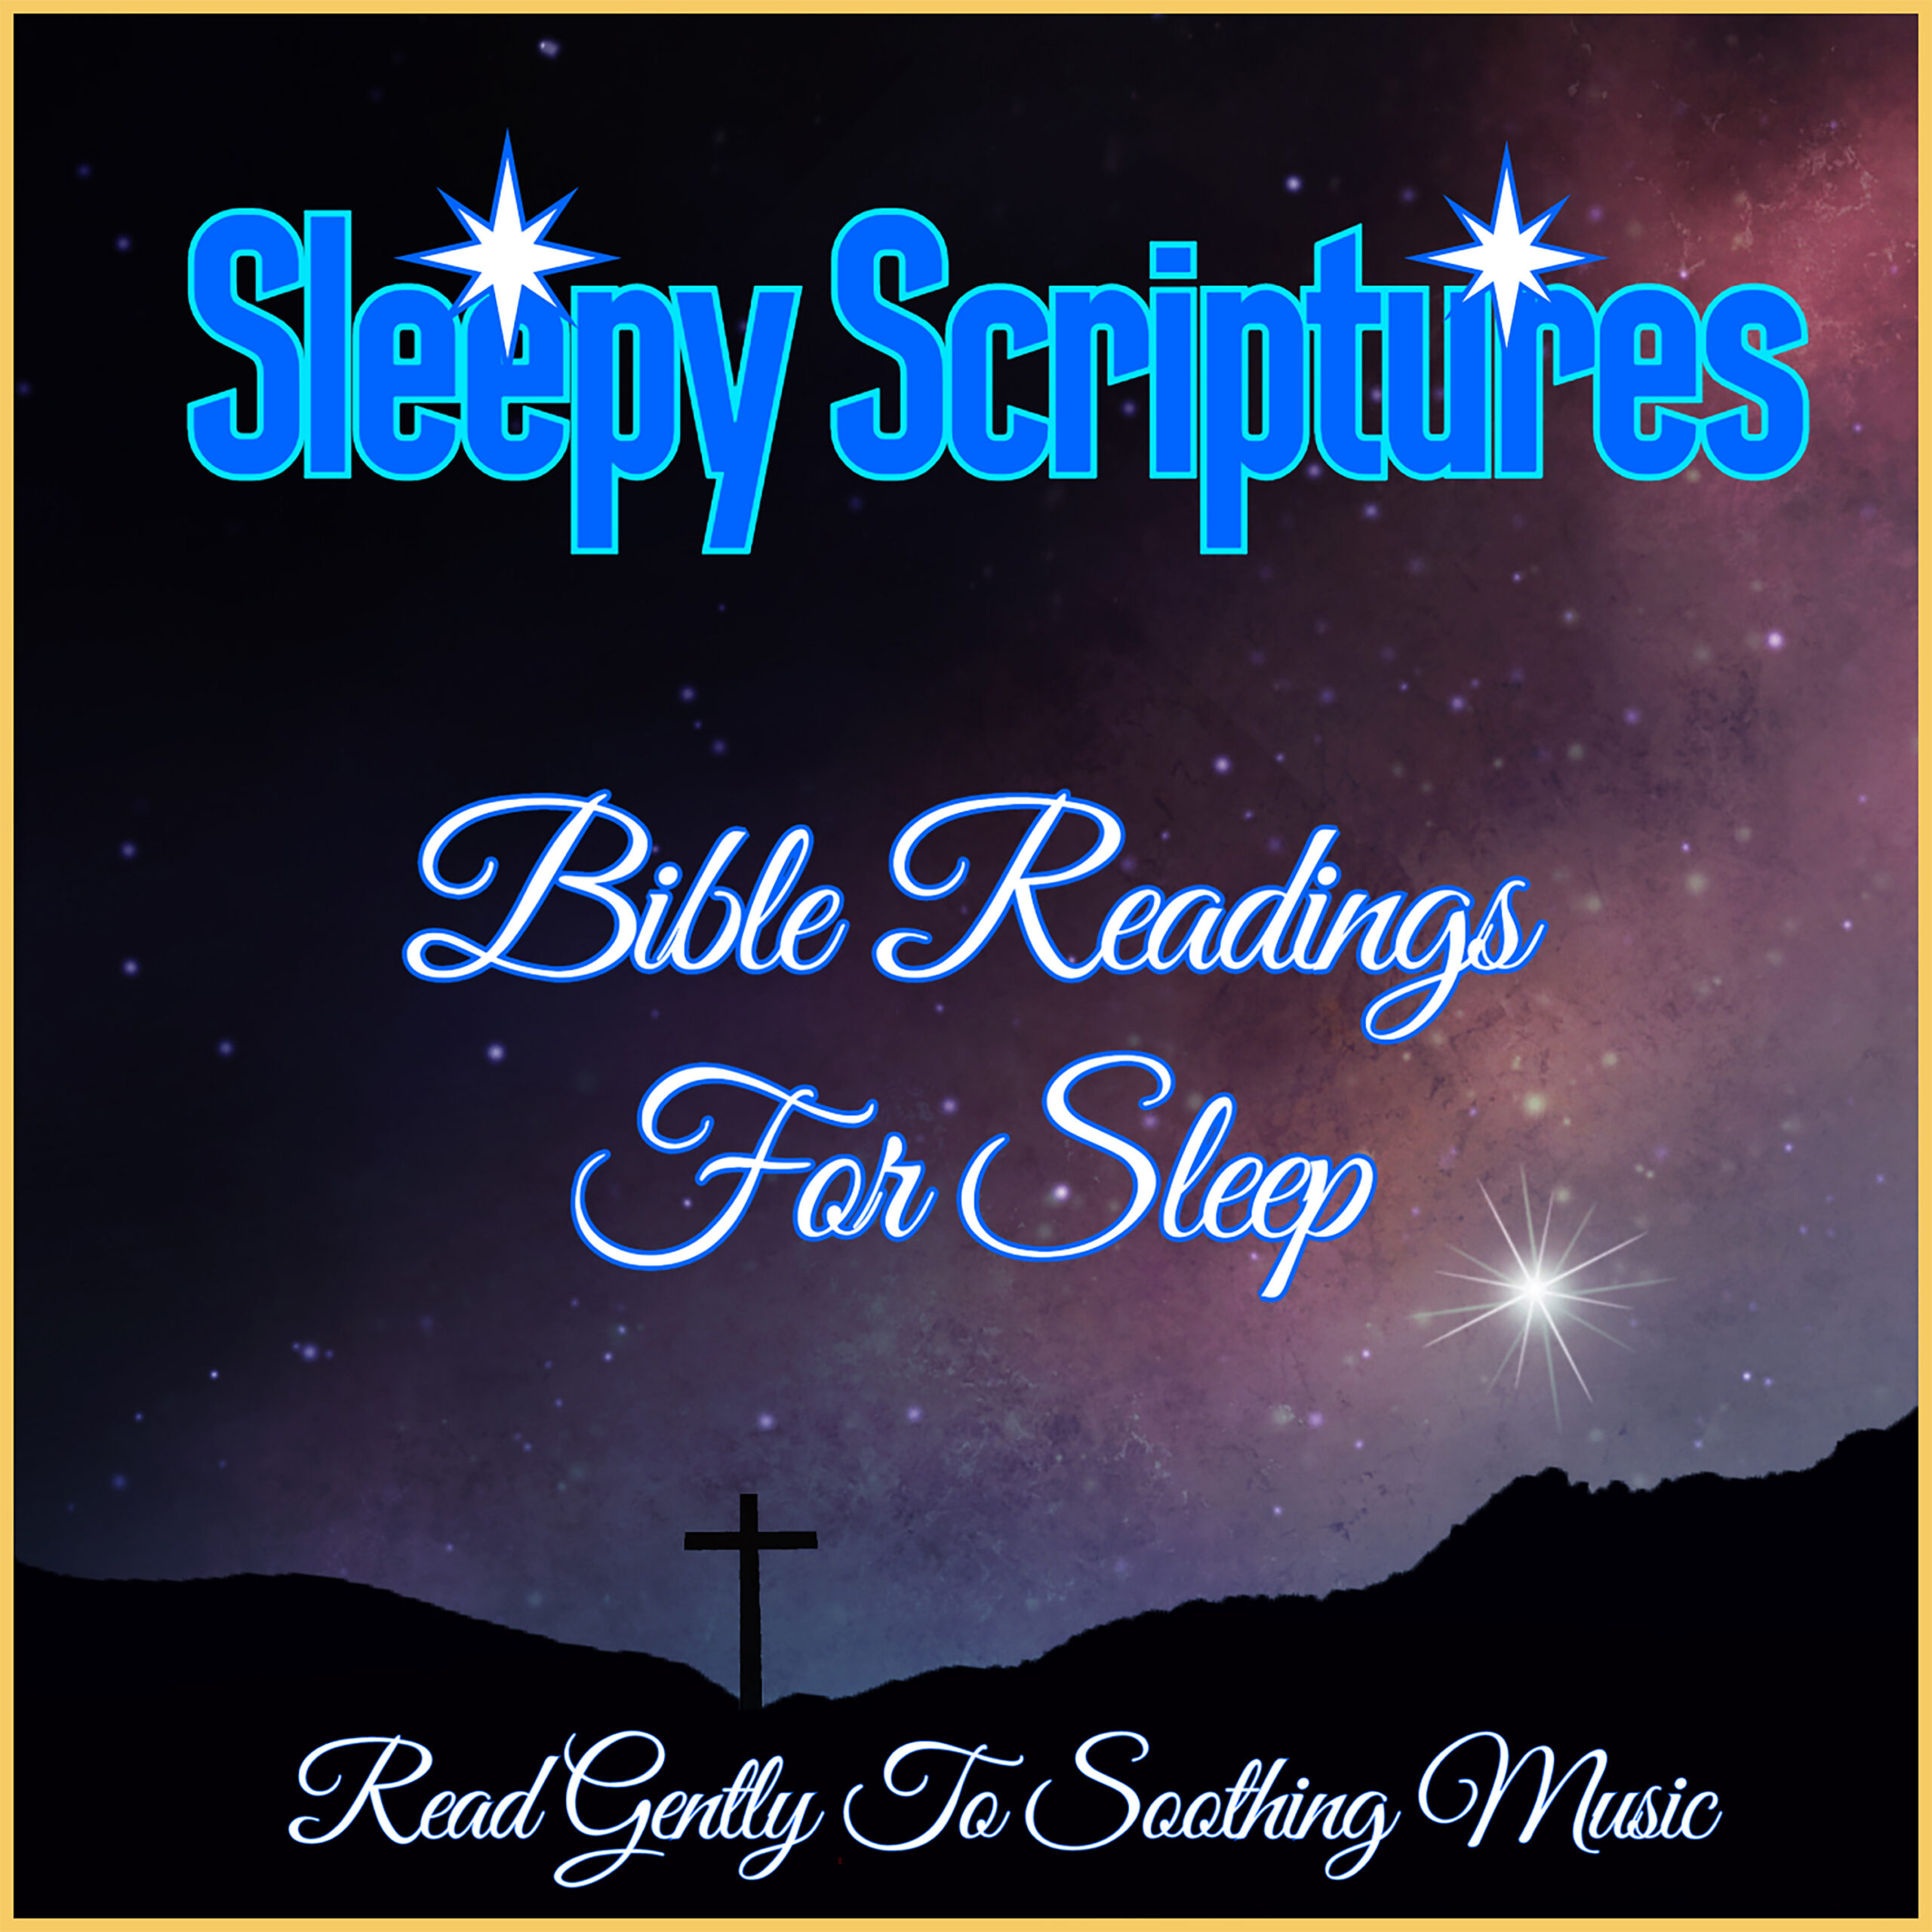 Visit Sleepy Scriptures